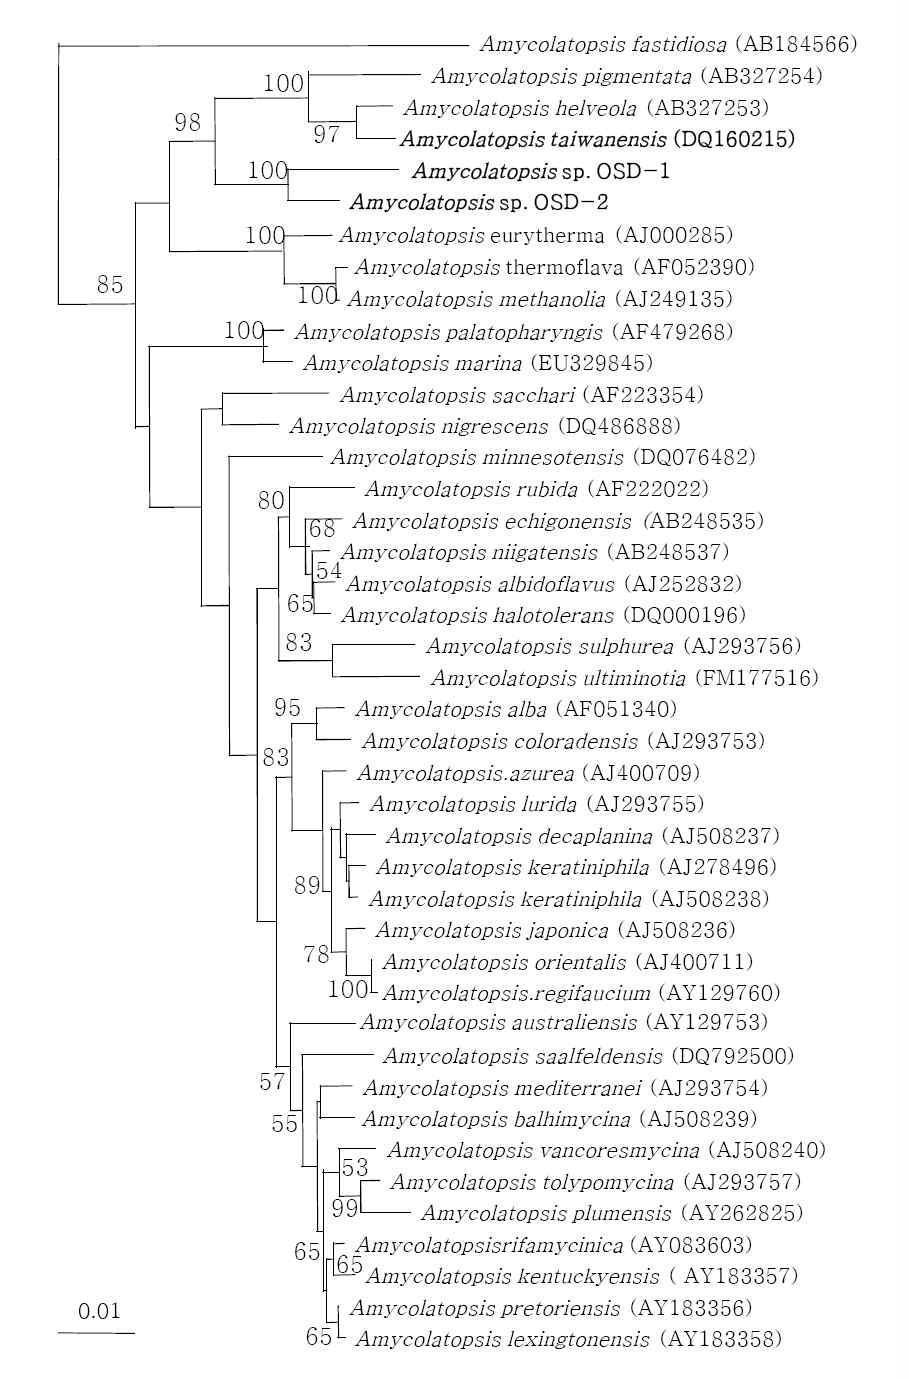 참나무 발효톱밥에서 분리한 Amycolatopsis sp. OSD-1과 OSD-2의 phylogenetic tree Outgroup: Actinosynnema mirum (AF328679). 1000번의 bootstrap